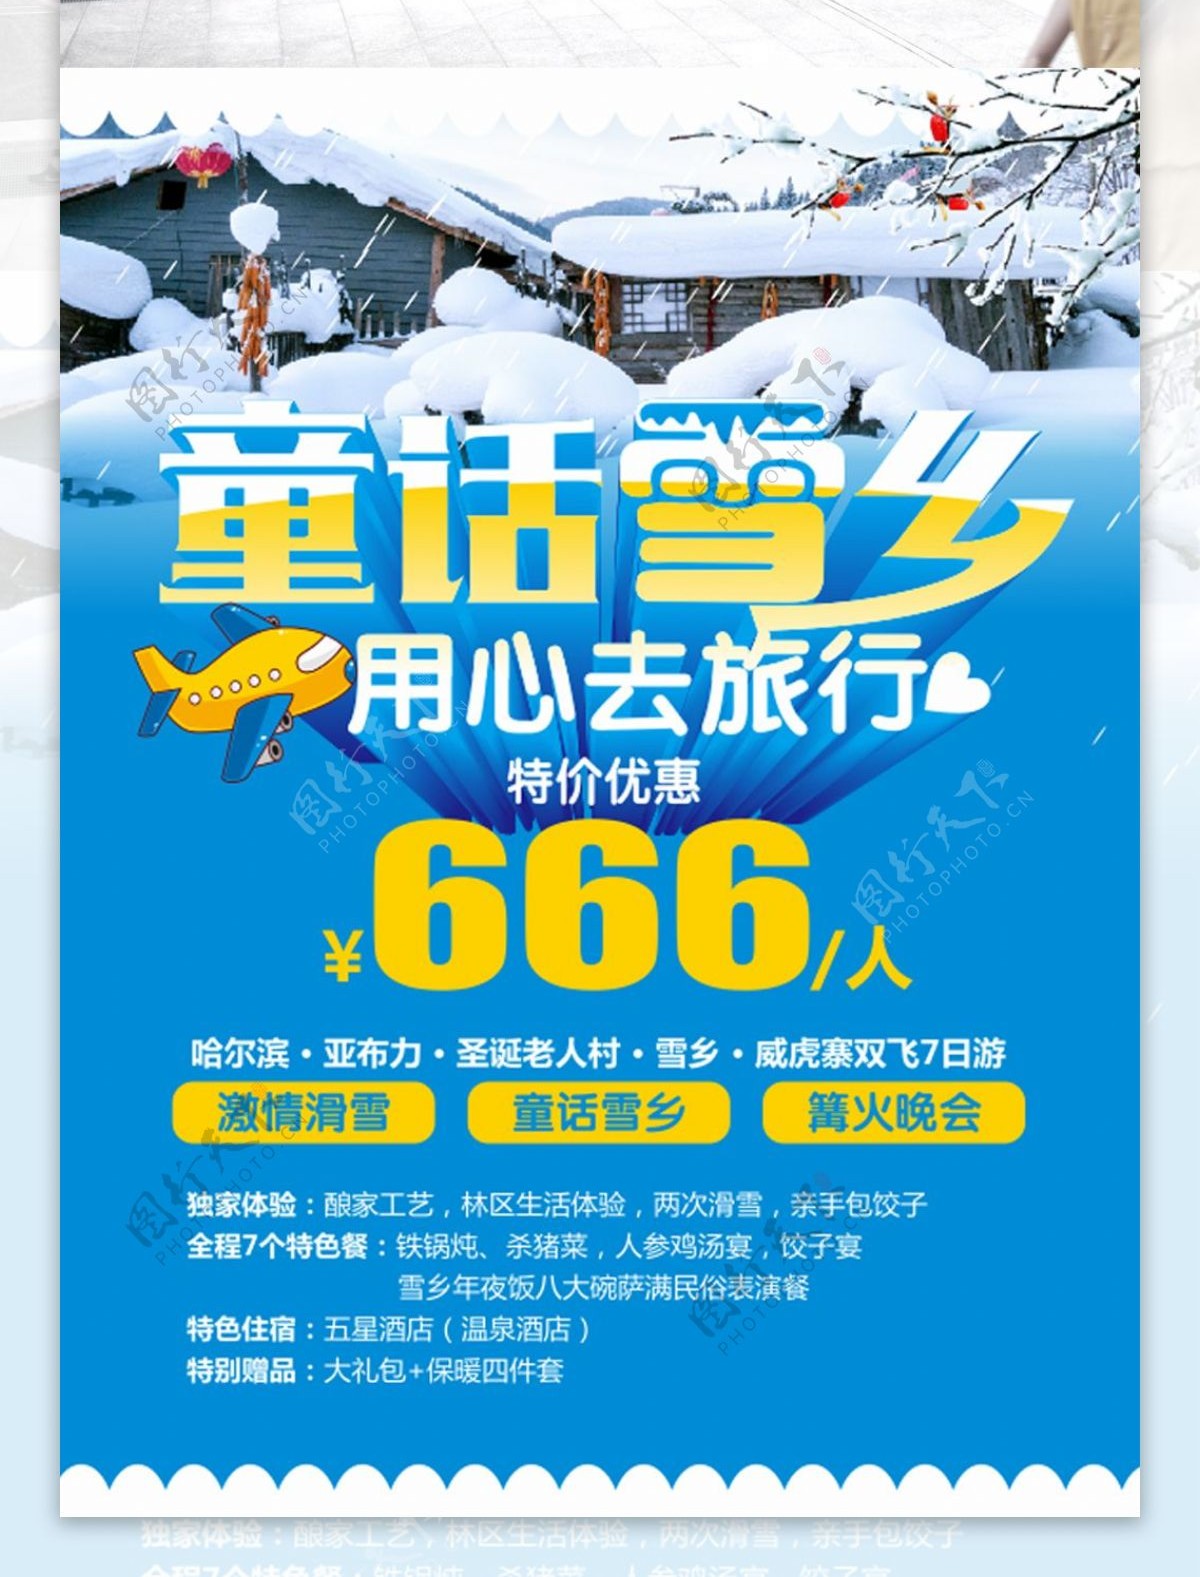 中国哈尔滨雪乡旅游海报